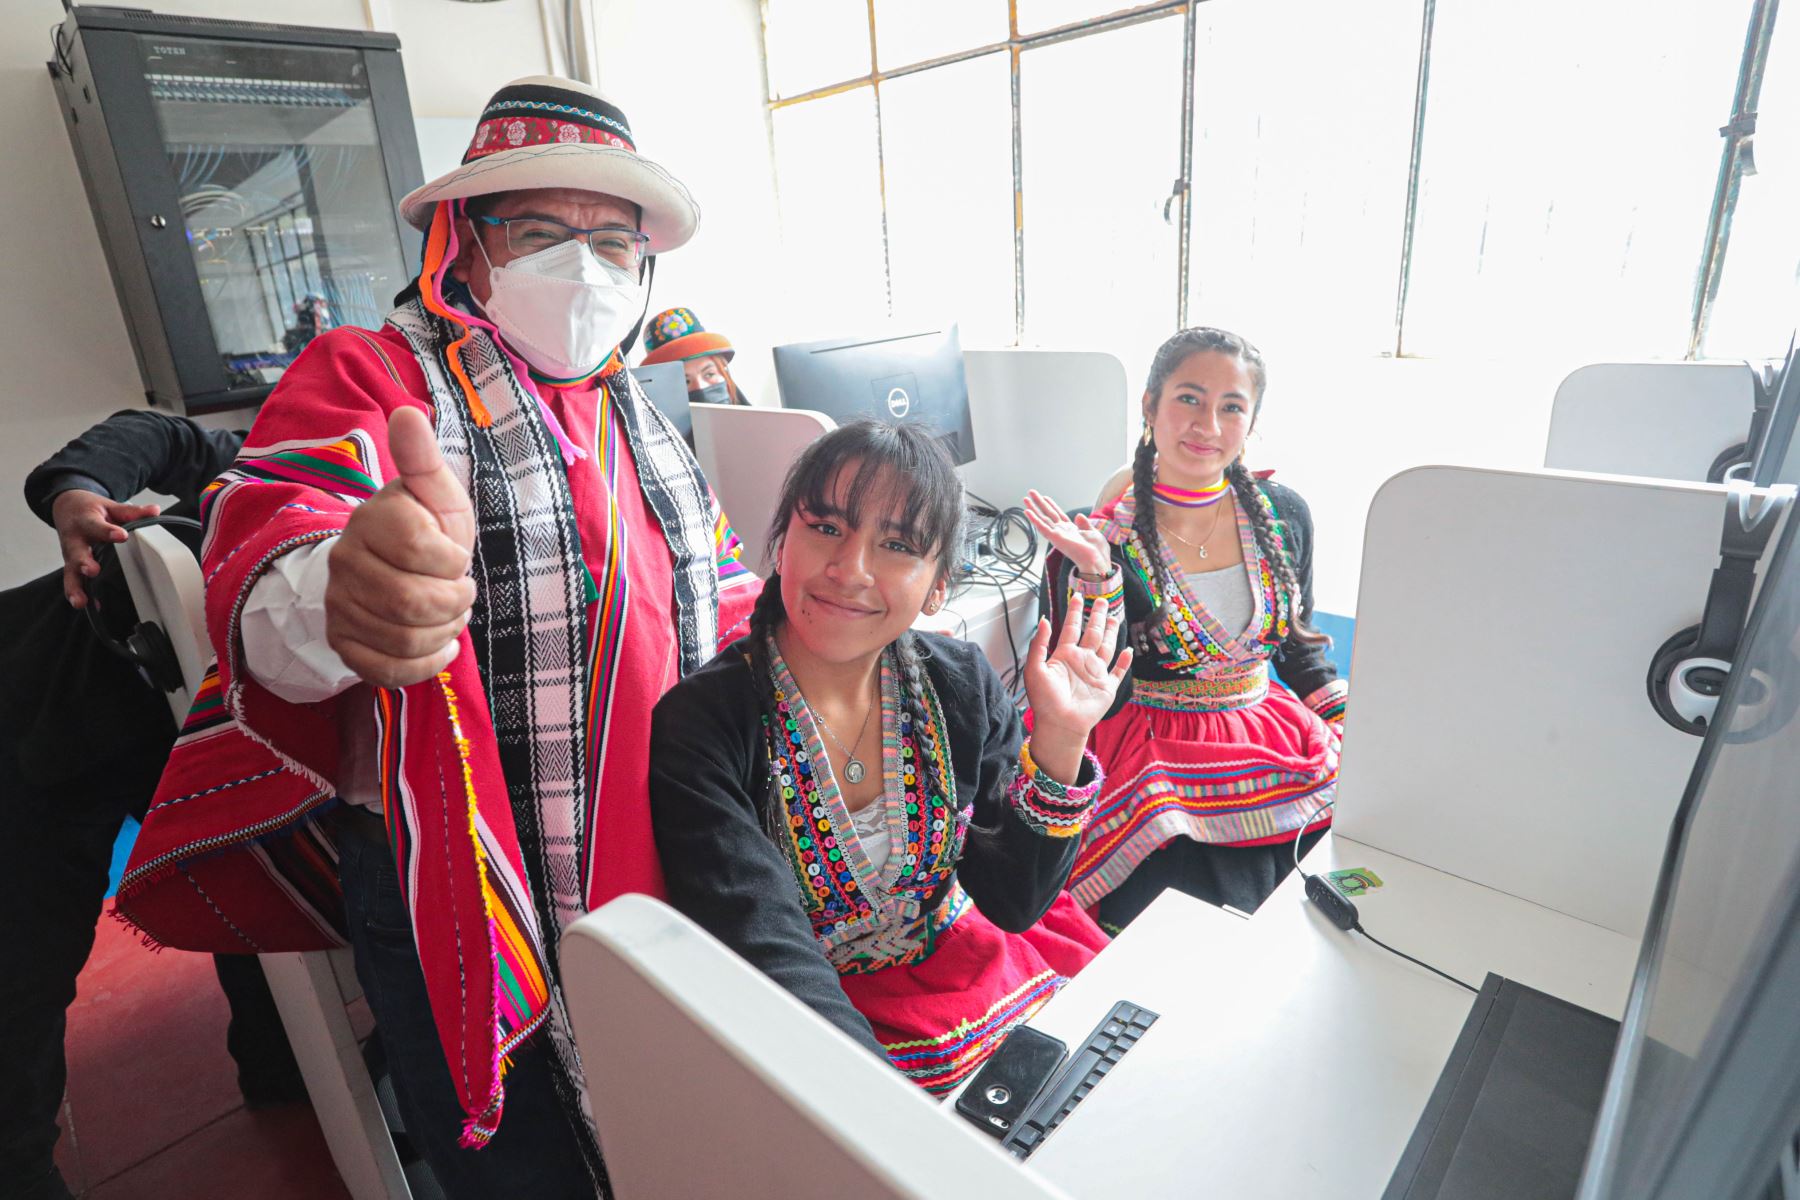 La inclusión digital inició hoy en Tambobamba, el viceministro de Comunicaciones, Virgilio Tito Chura, inauguró el acceso gratuito del Instituto Superior Pedagógico José Carlos Mariátegui a la Red Dorsal Nacional de Fibra Óptica.
Foto: ANDINA/MTC